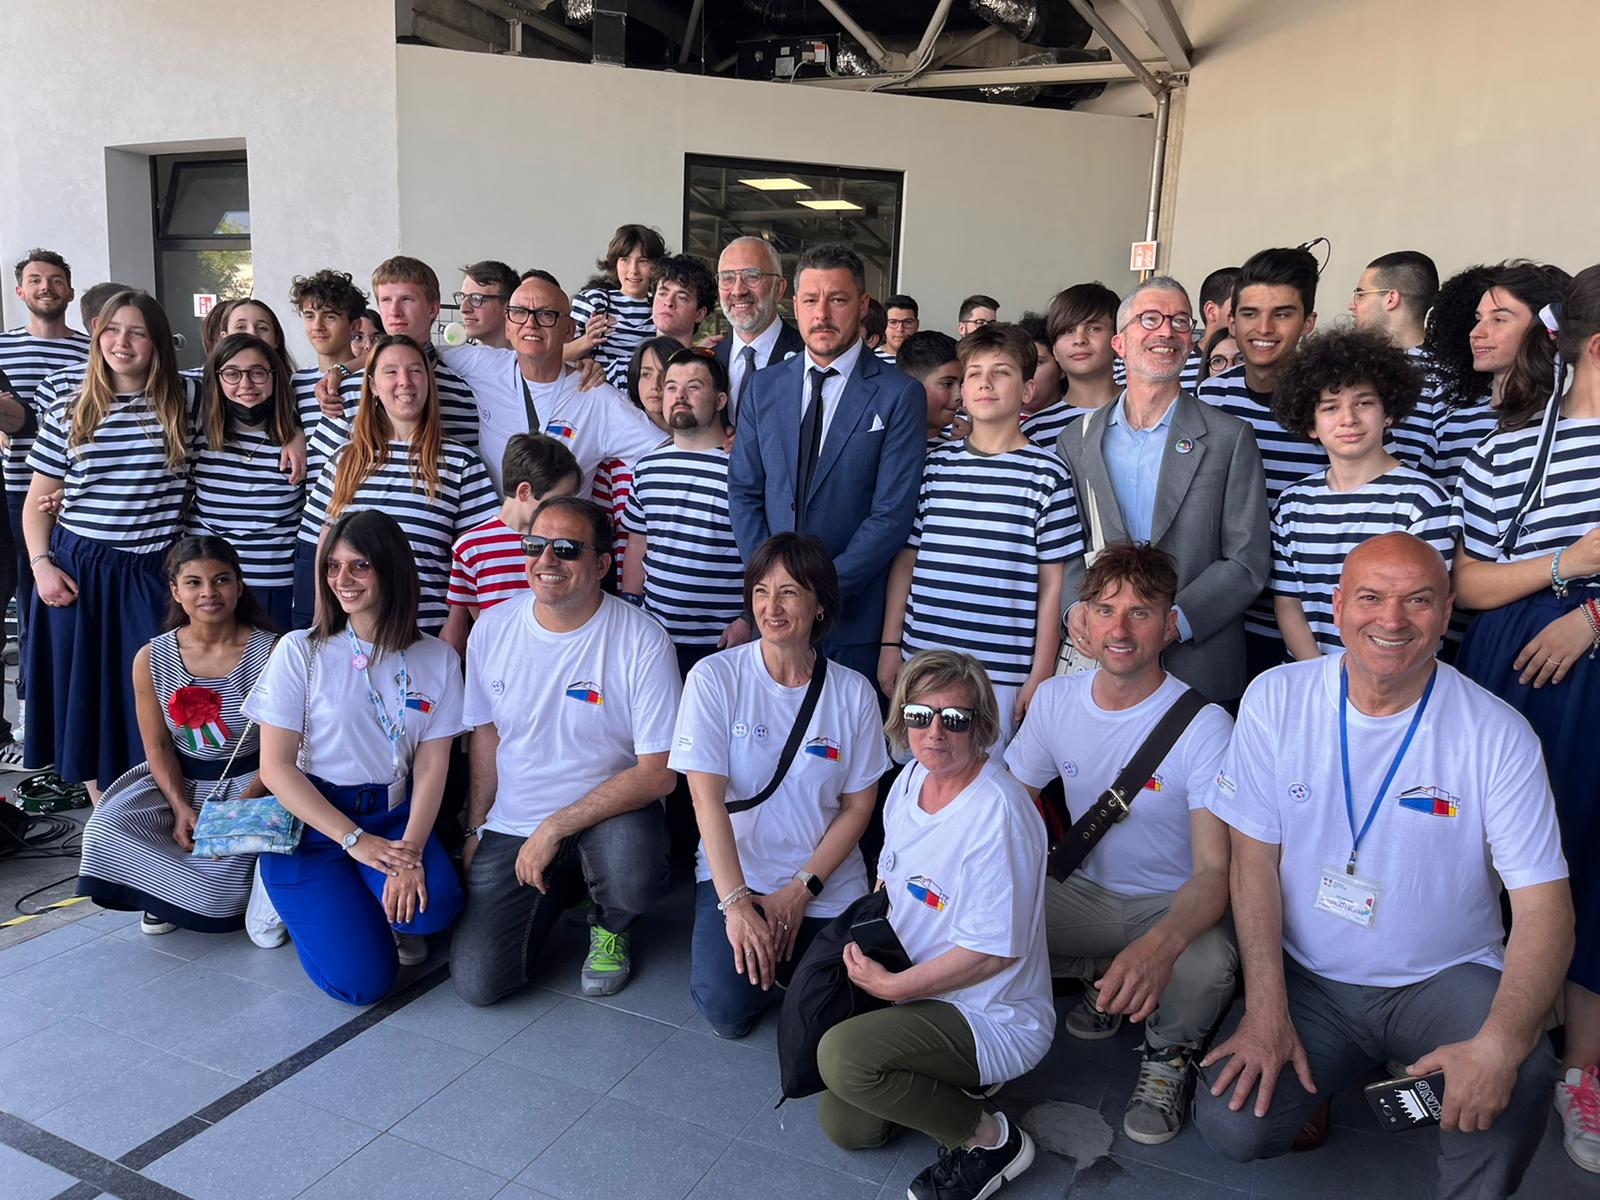 Matera 2019 e l’Associazione Volontari Open Culture 2019 a Finale Emilia per l’inaugurazione della Stazione Rulli Frulli